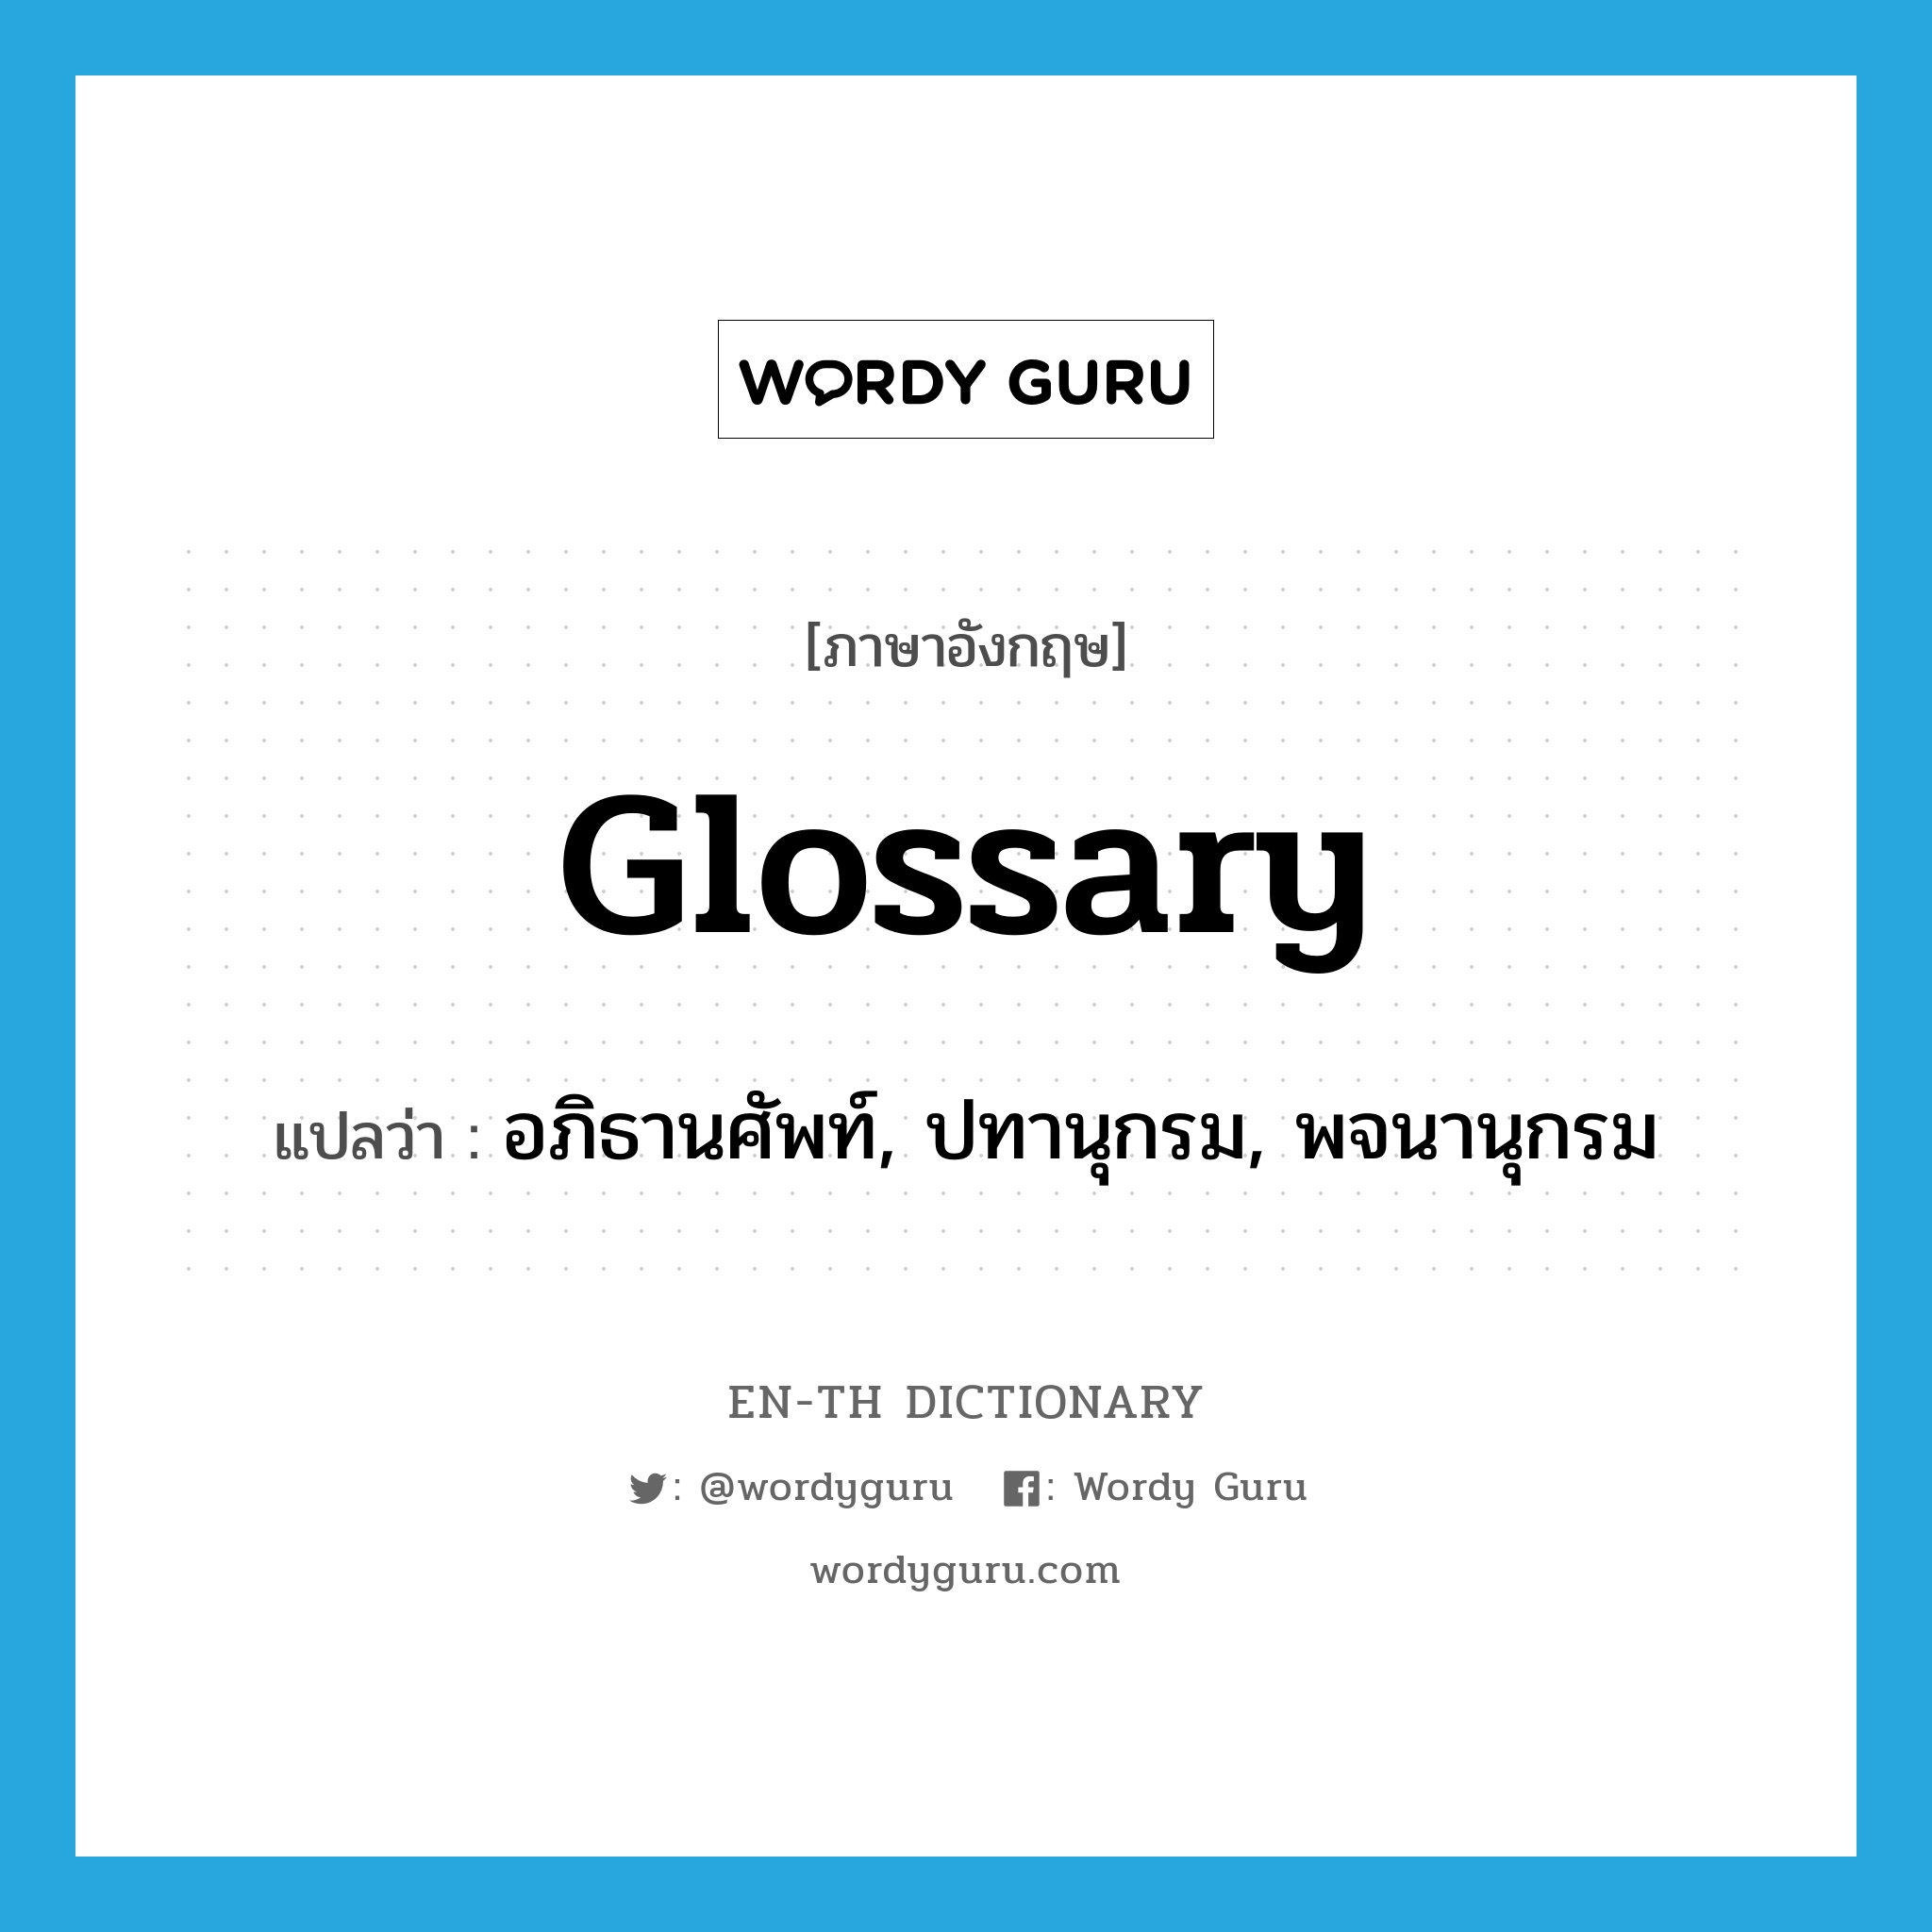 อภิธานศัพท์, ปทานุกรม, พจนานุกรม ภาษาอังกฤษ?, คำศัพท์ภาษาอังกฤษ อภิธานศัพท์, ปทานุกรม, พจนานุกรม แปลว่า glossary ประเภท N หมวด N